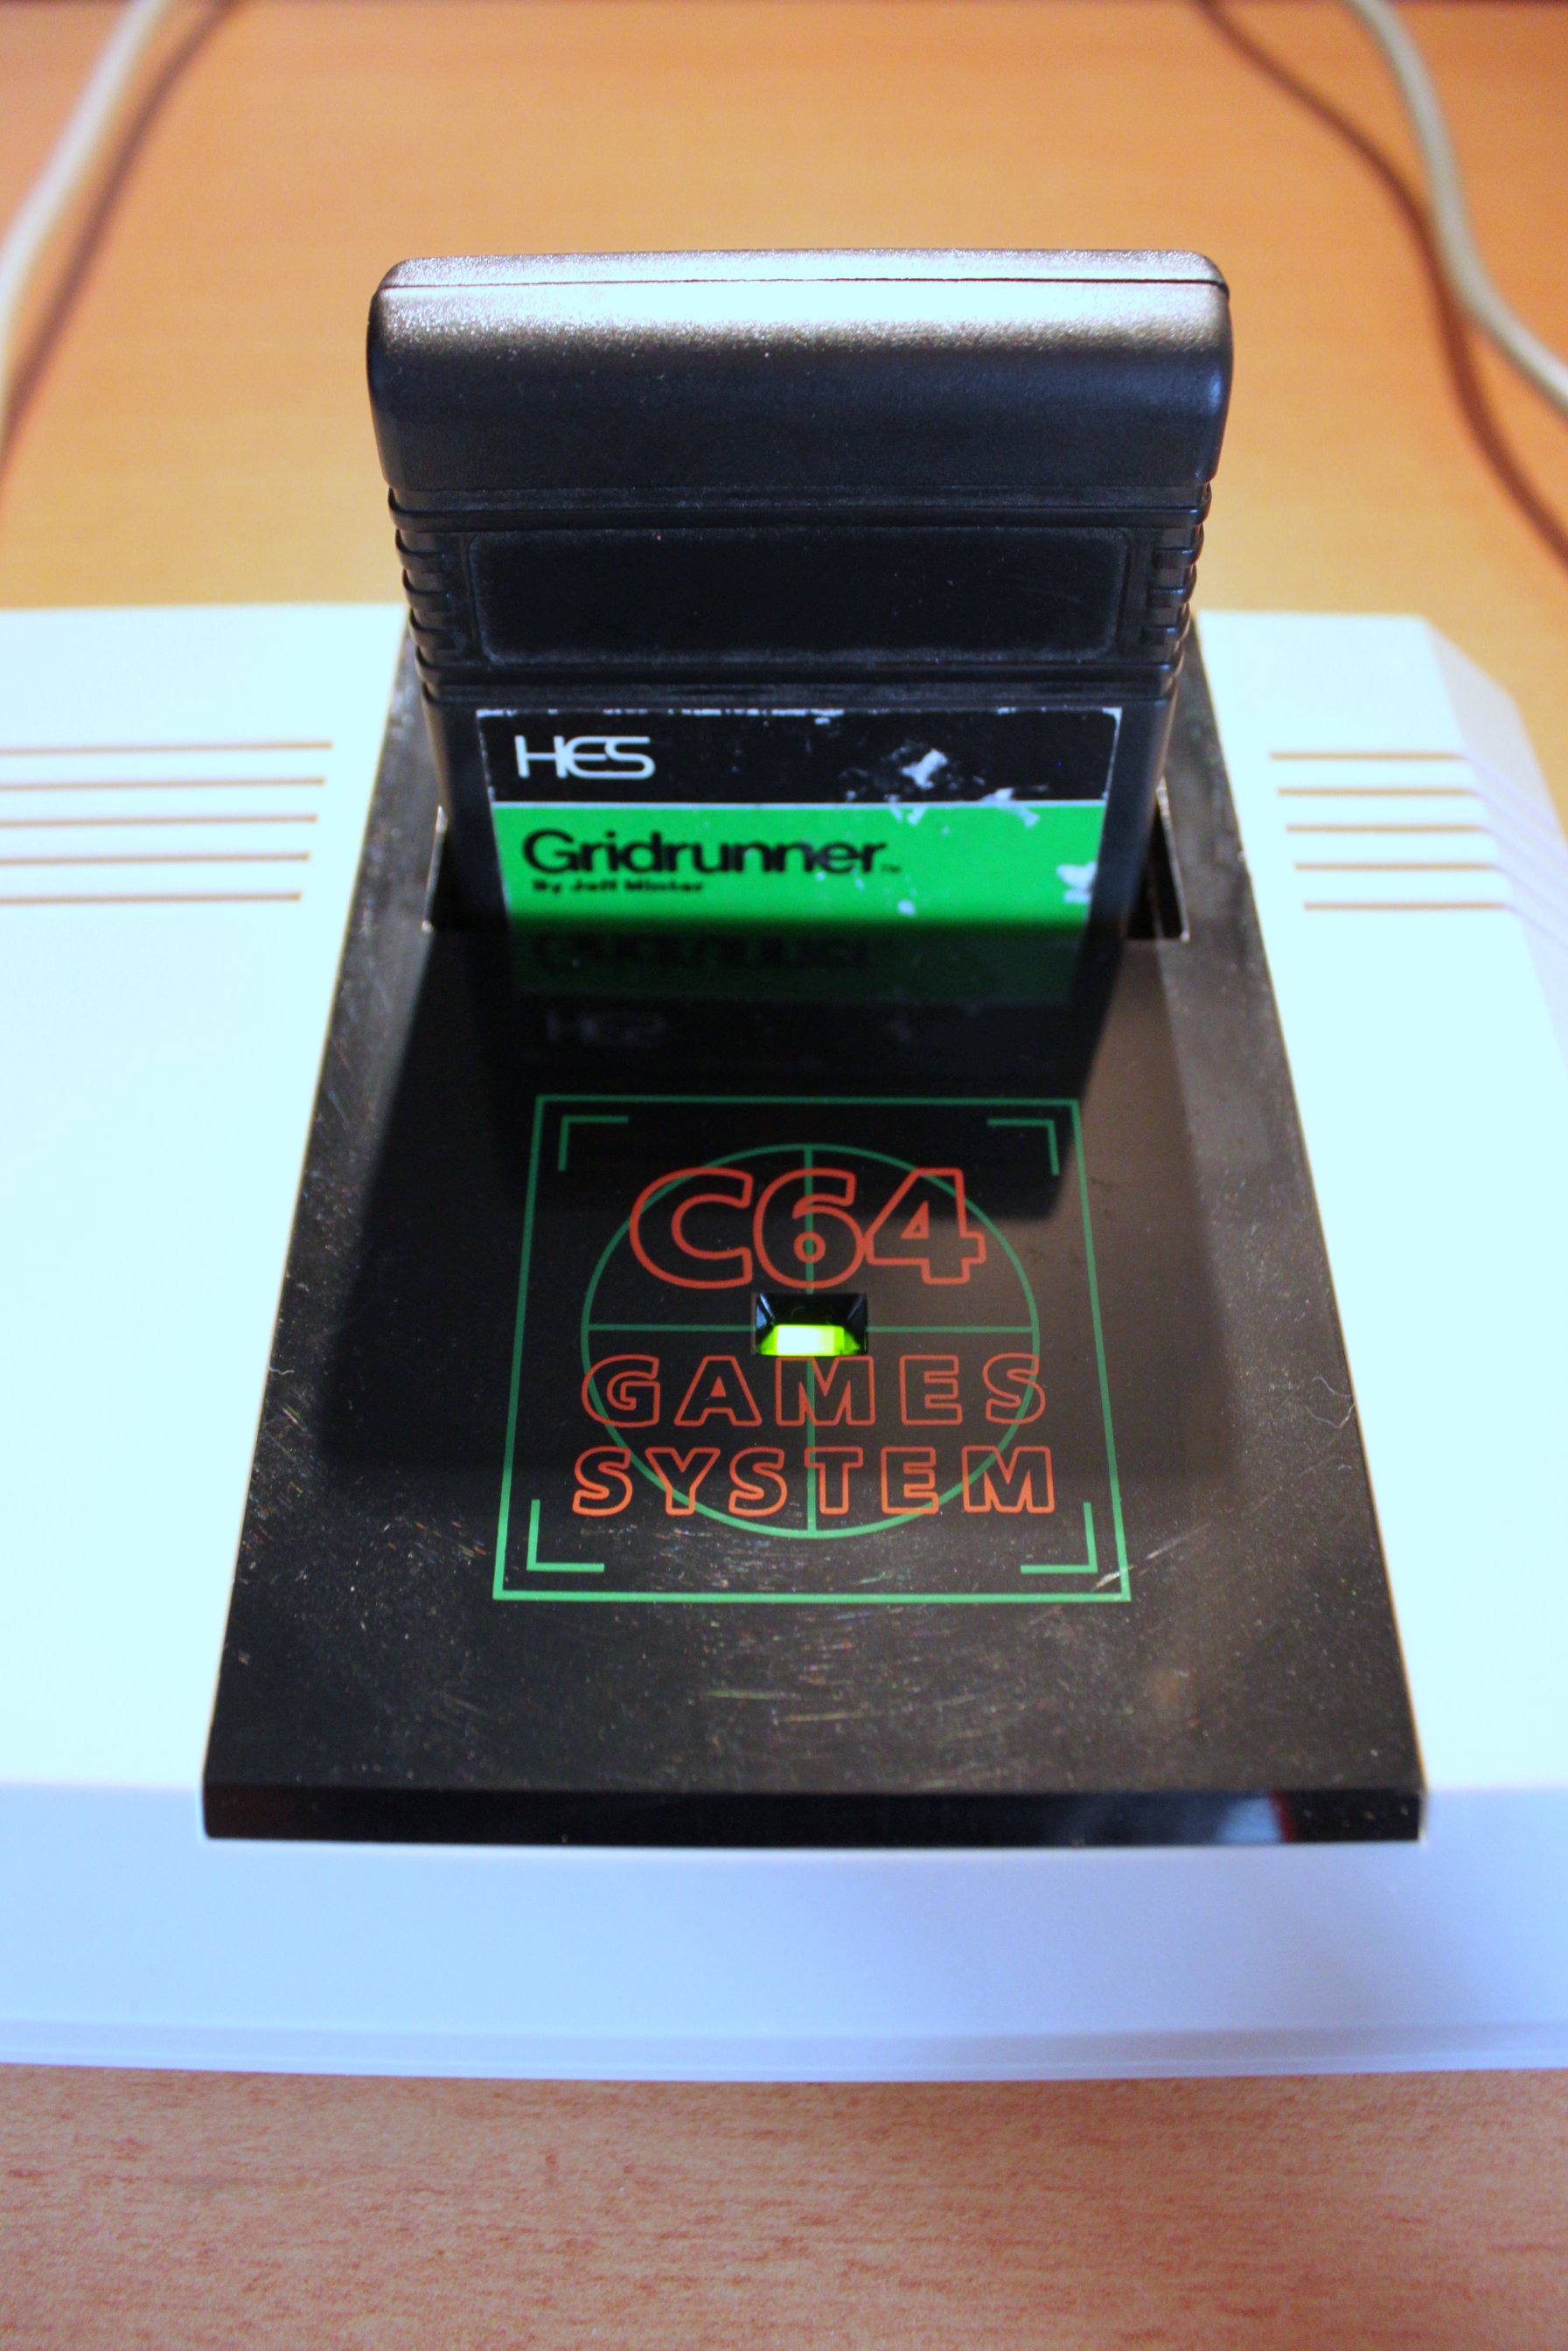 C64 GS avec cartouche Gridrunner (5746275808).jpg